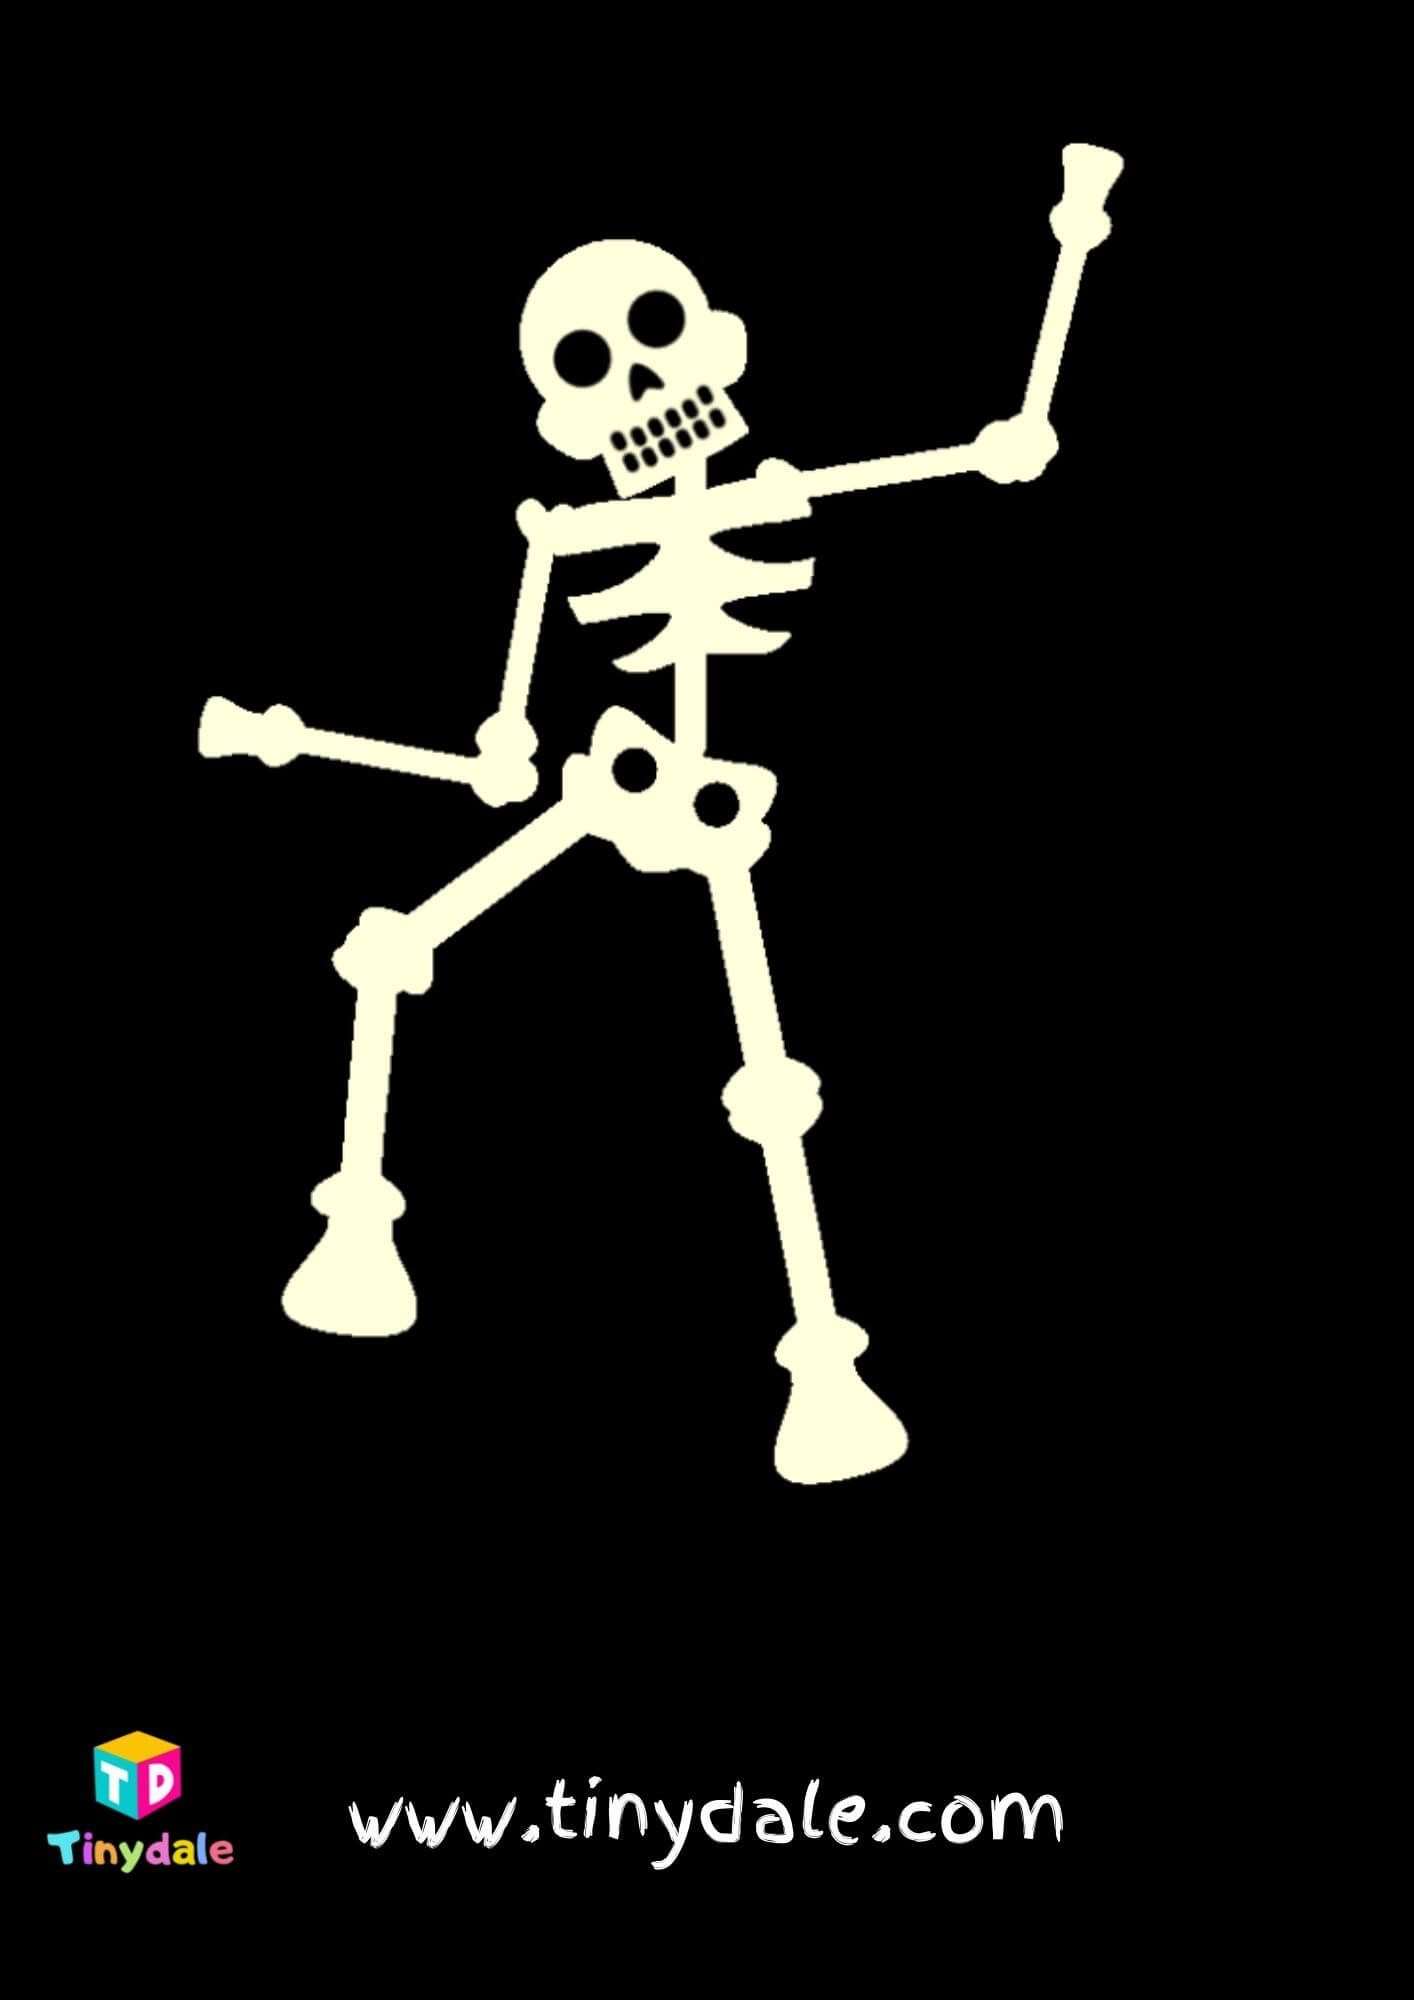 Dancing skeleton template